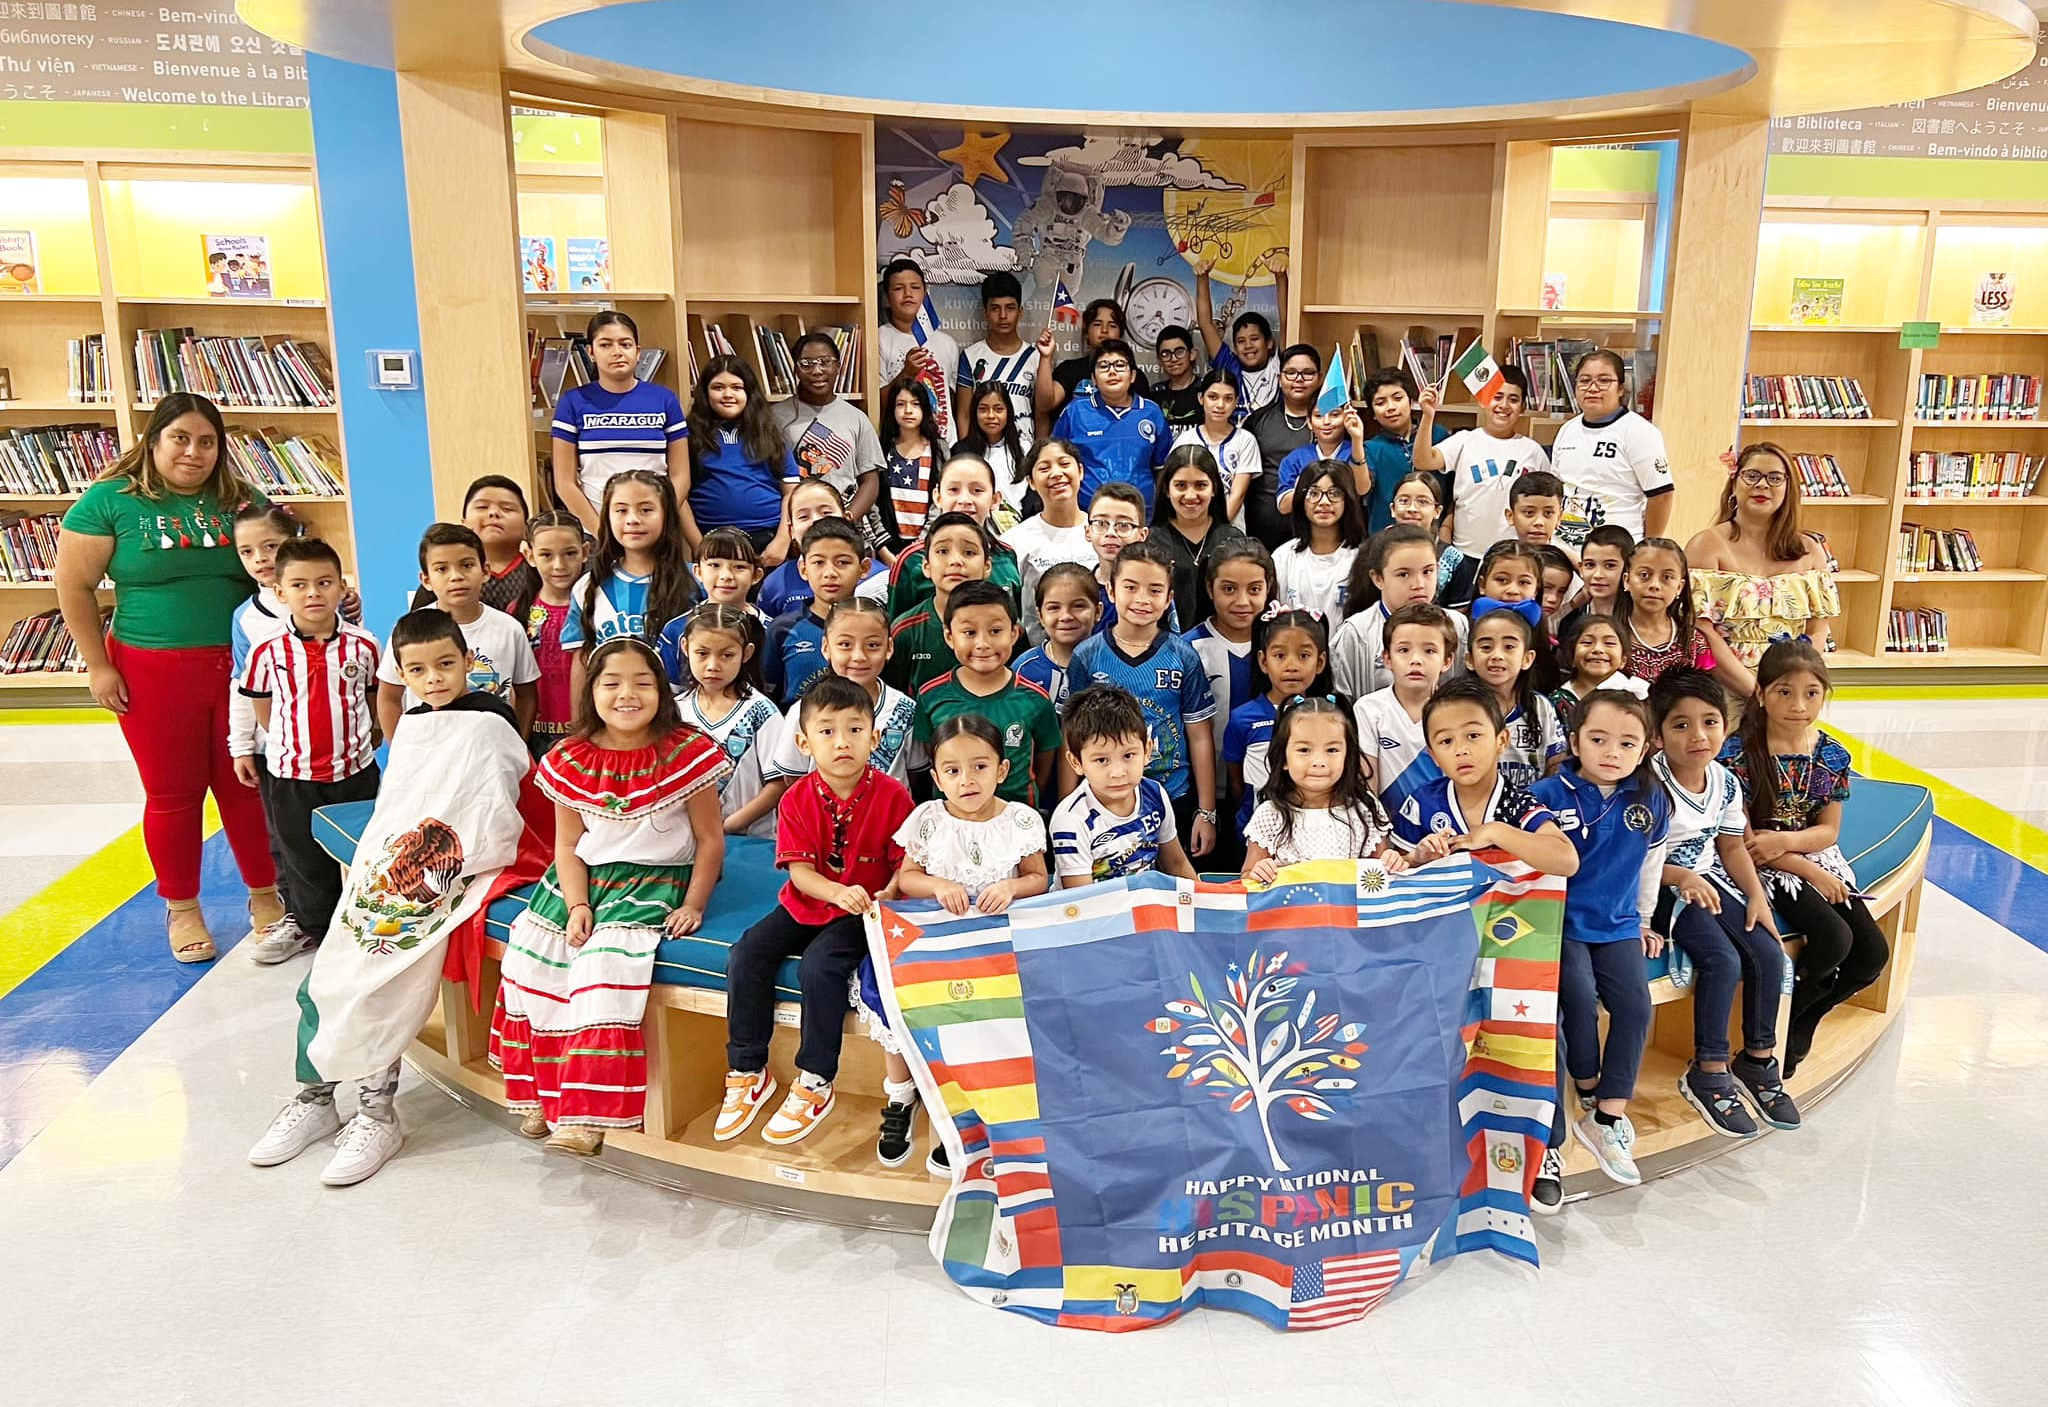 Hispanic heritage celebration 